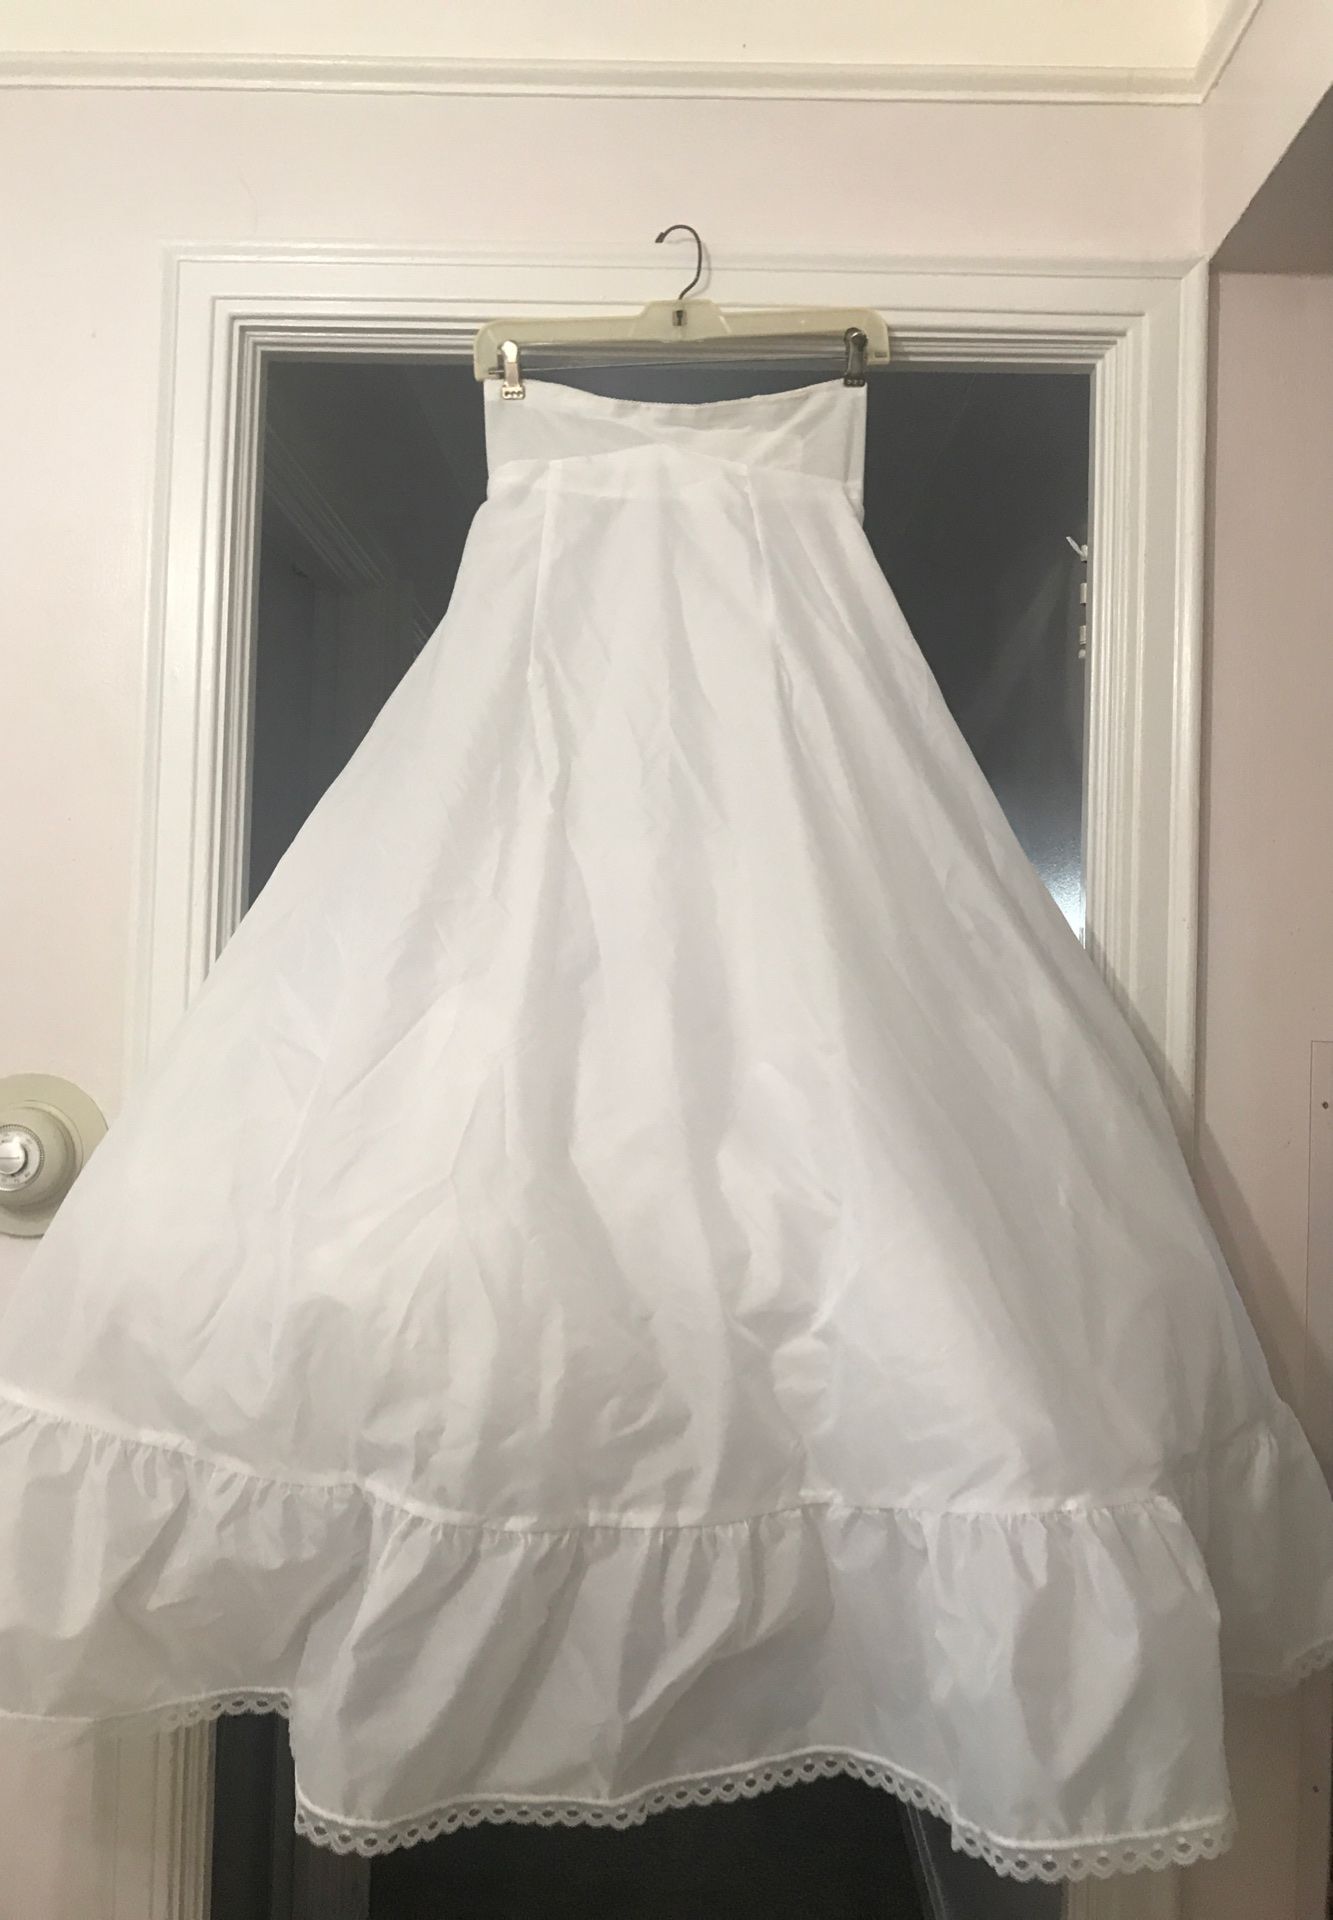 Petticoat size 10 and Strapless torsolette bra 34B